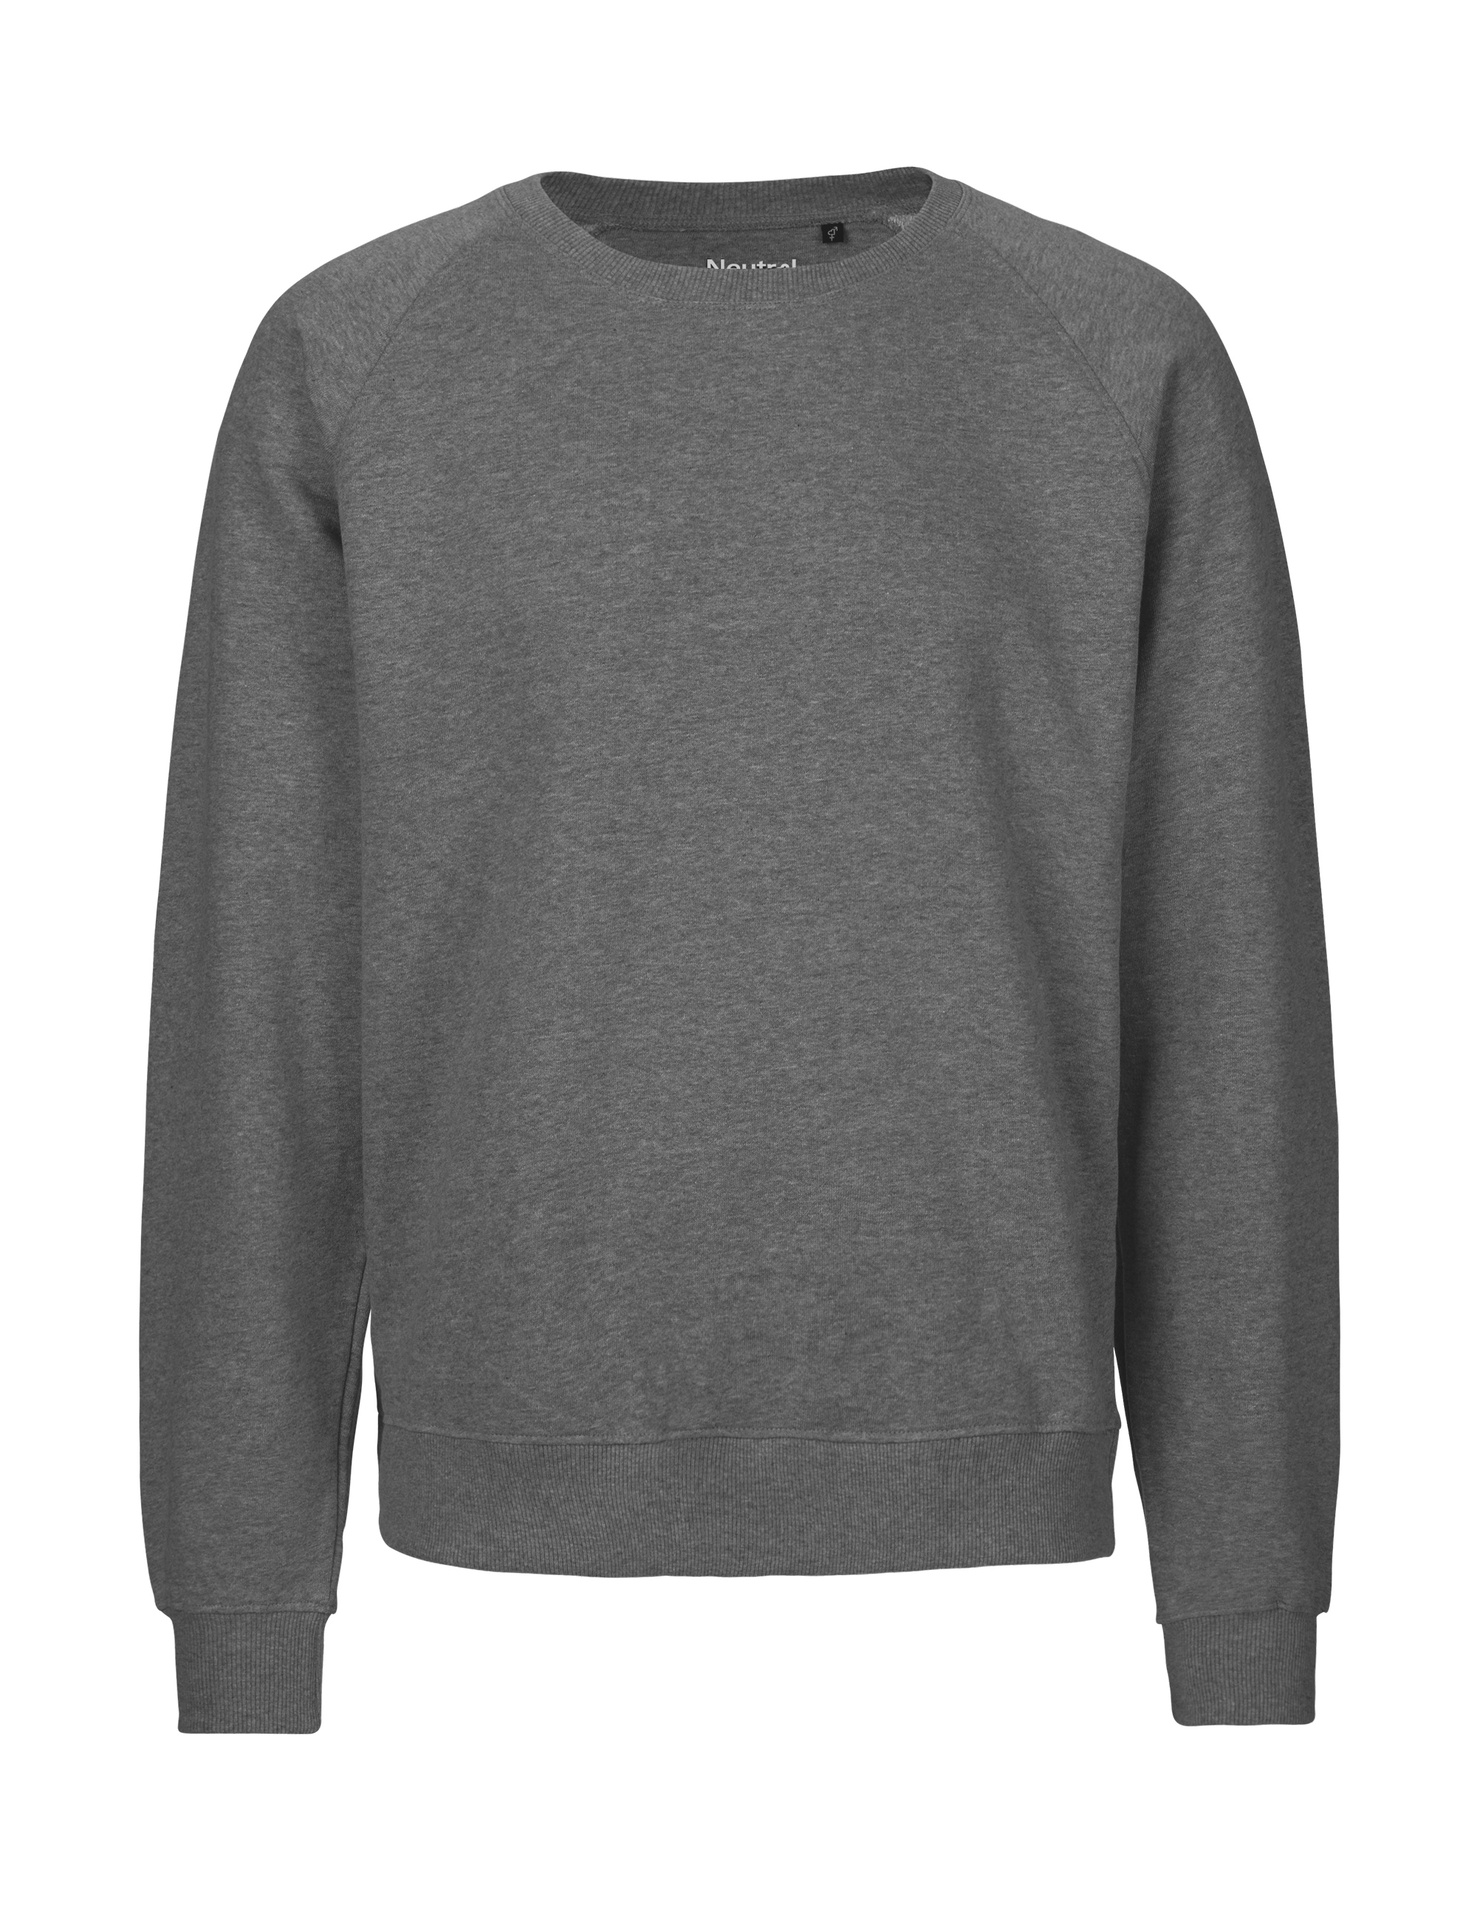 [PR/02699] Unisex Sweatshirt (Dark Heather 08, M)